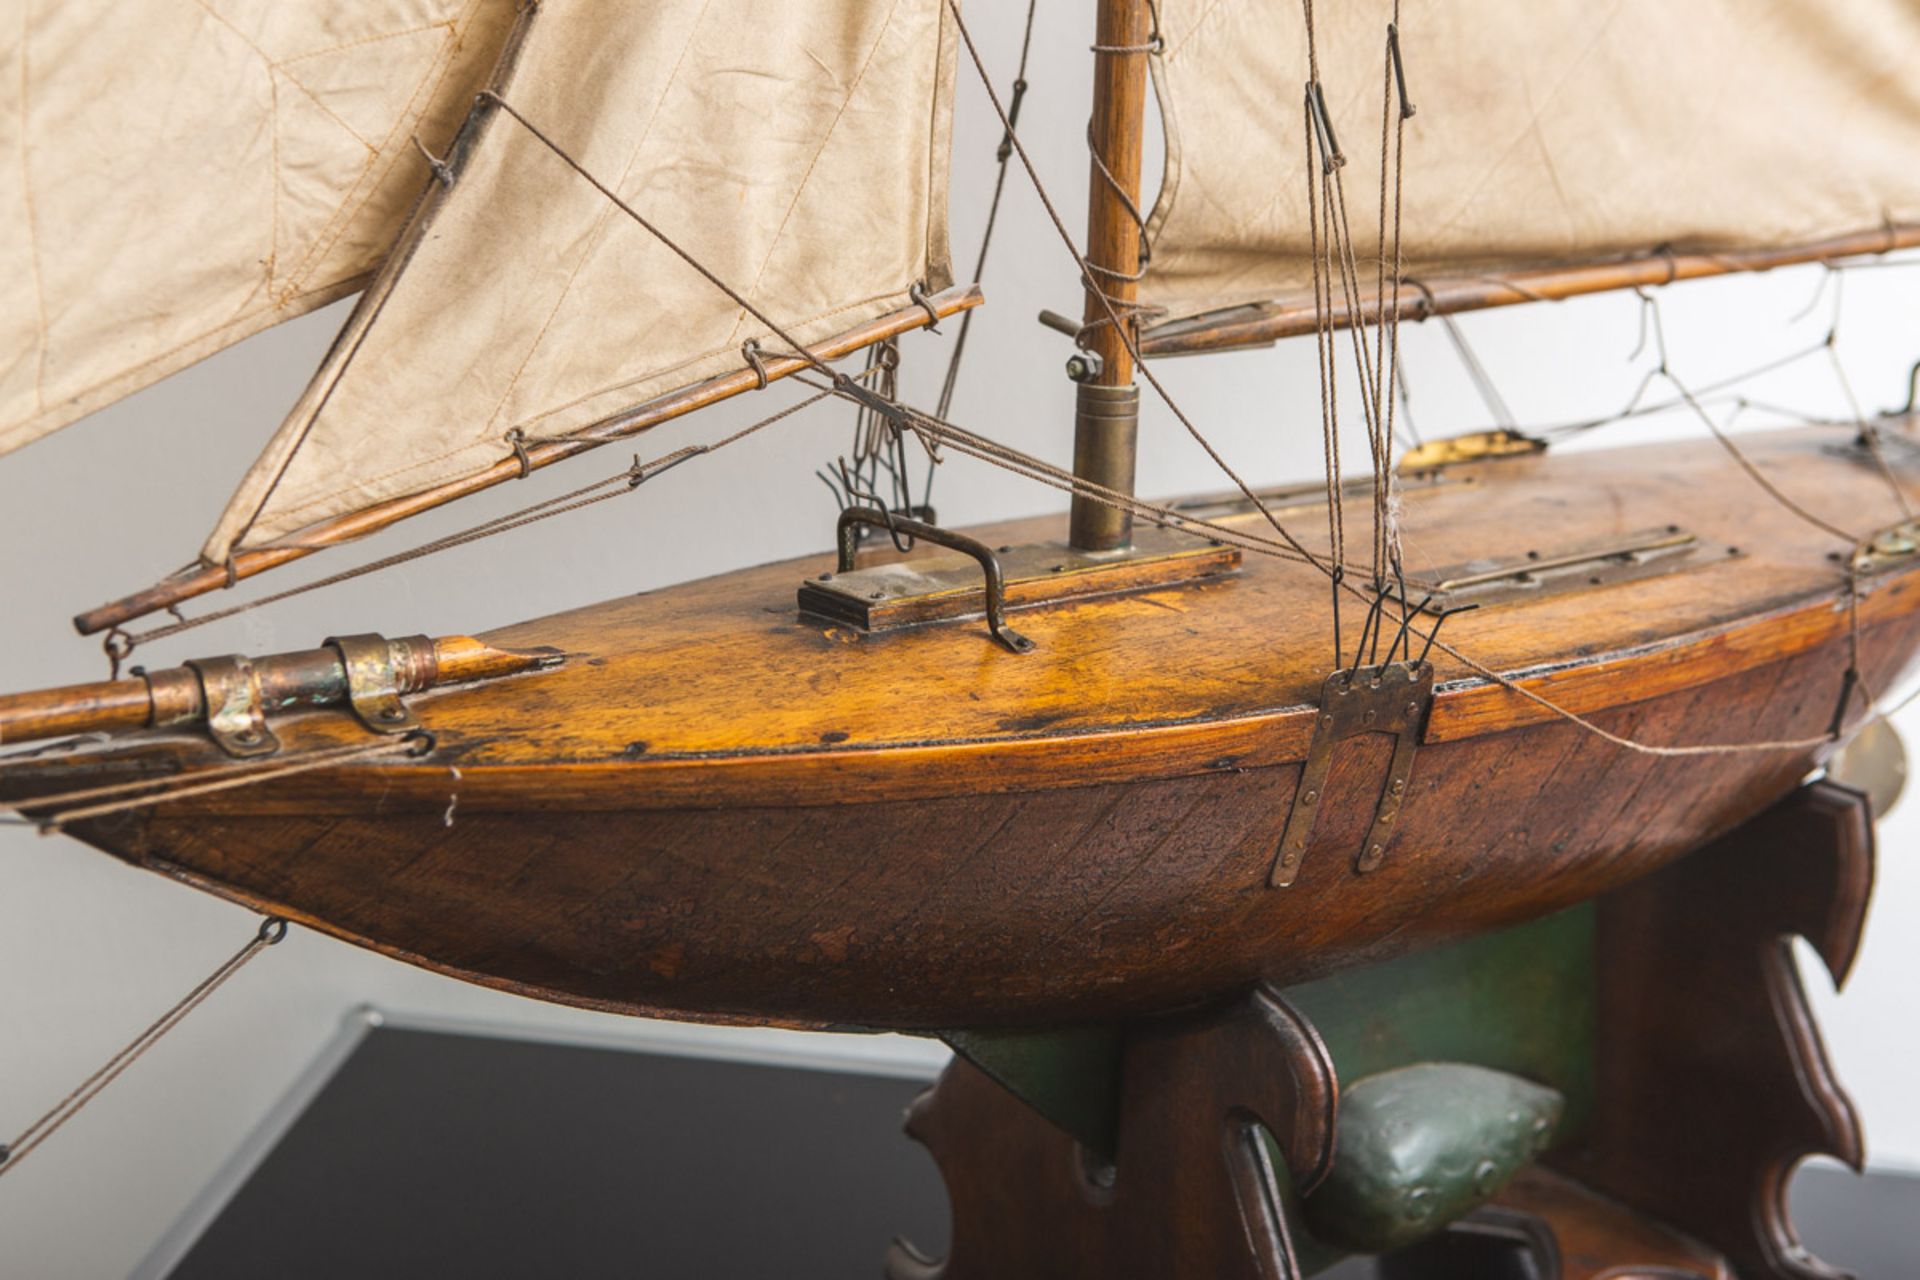 Schiffsmodell eines Segelbootes (wohl um 1900) - Image 2 of 3